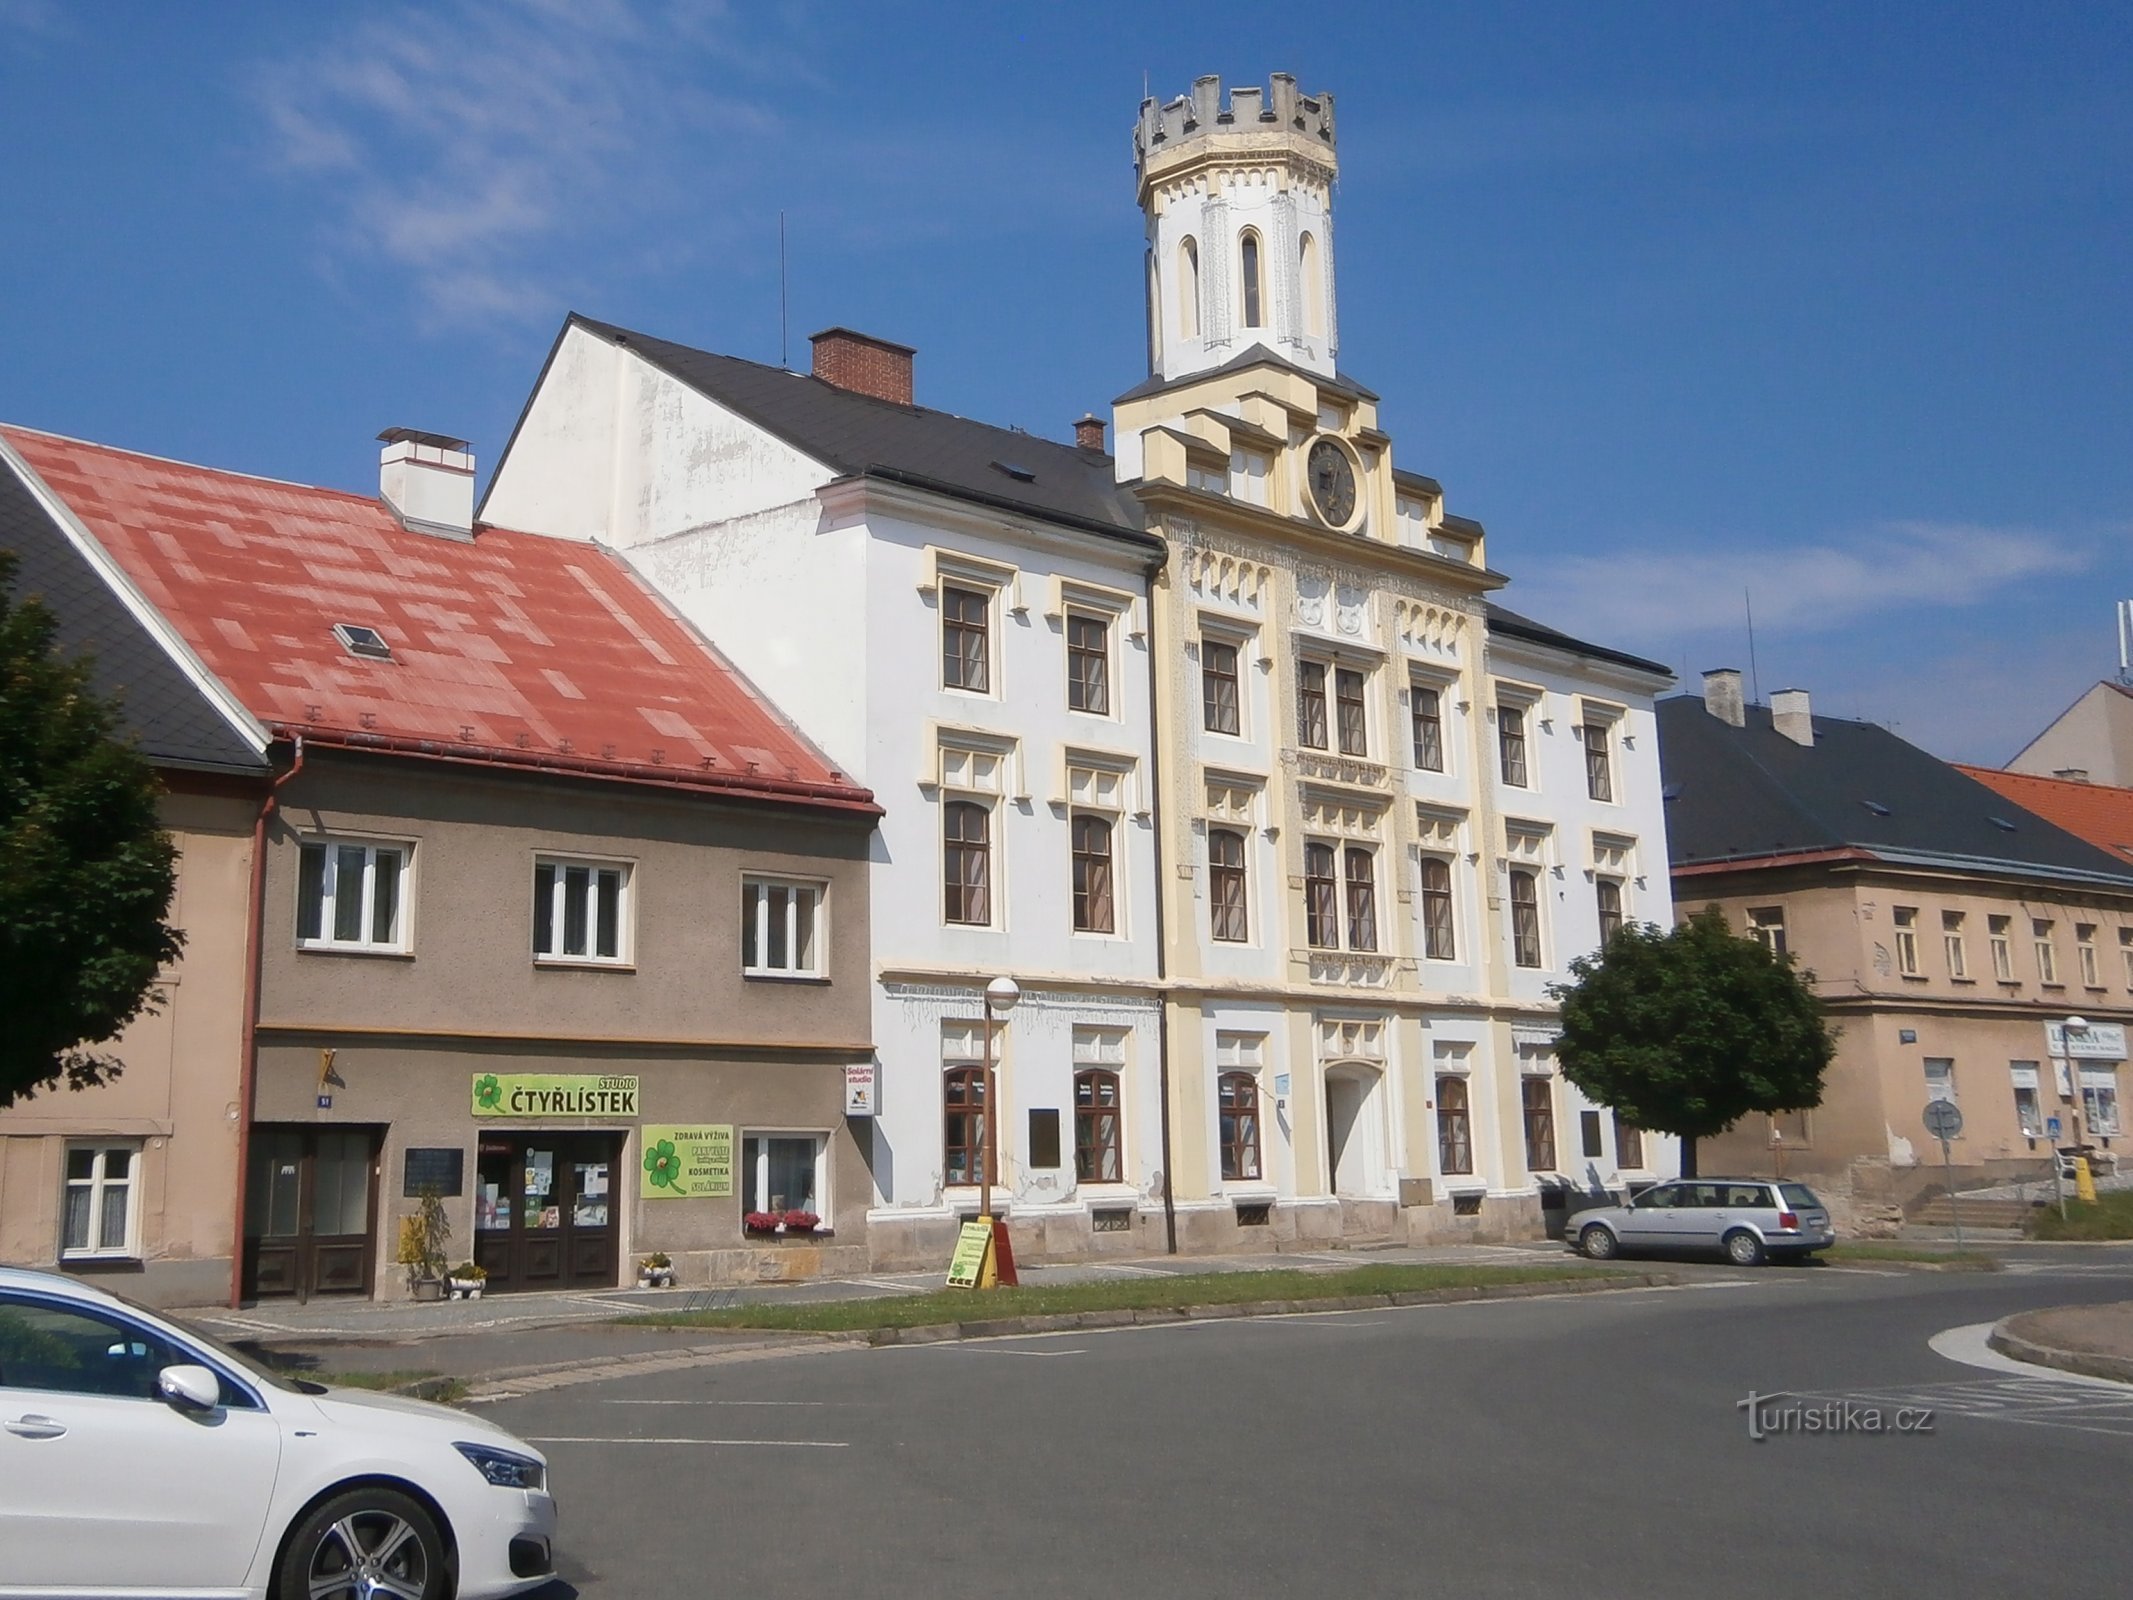 1. sz. régi városháza (Česká Skalice)